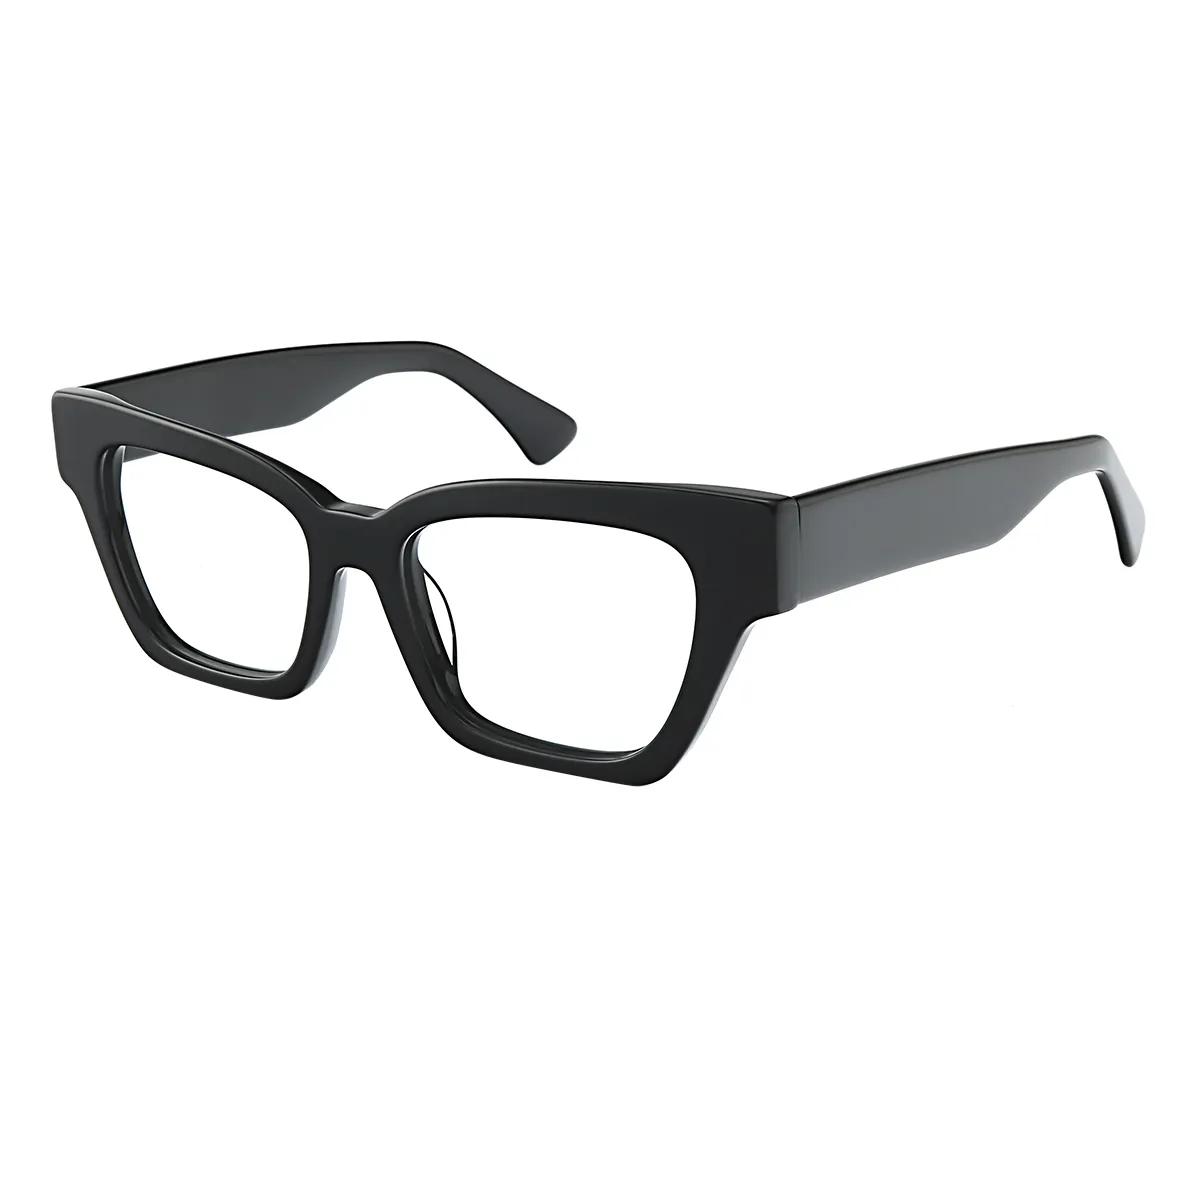 Alette - Square Black Glasses for Men & Women